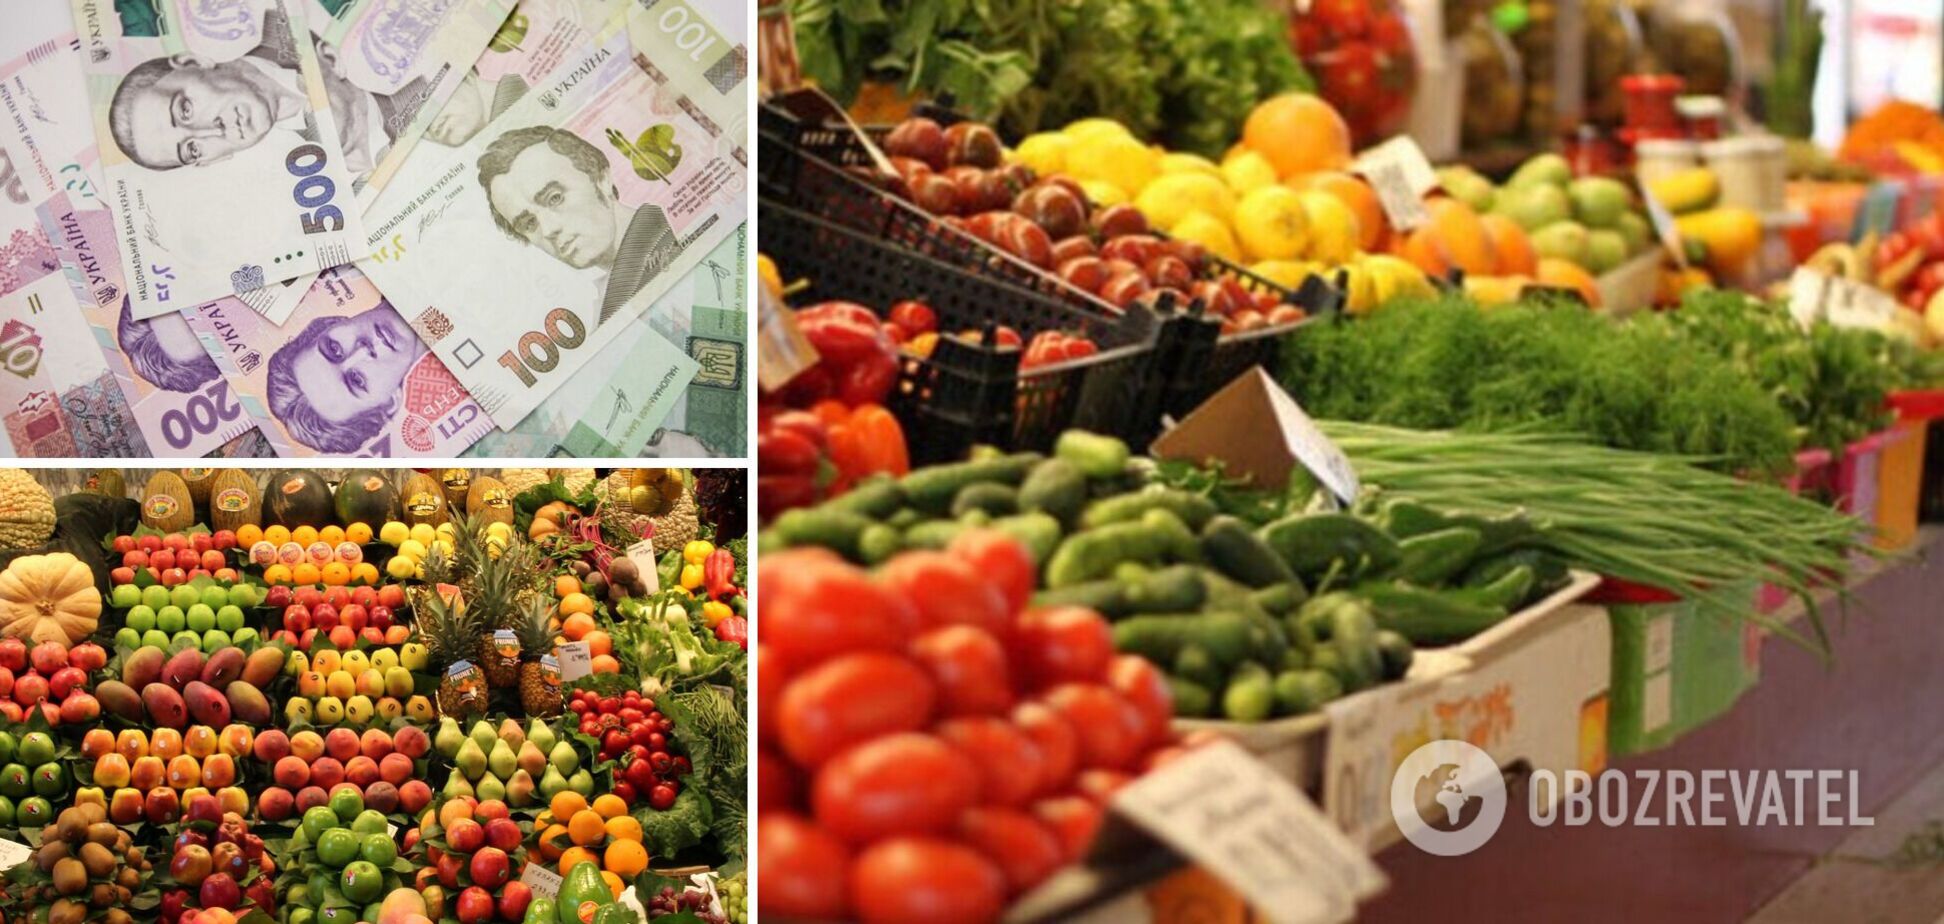 Кущ спрогнозировал дефицит овощей и фруктов зимой в Украине